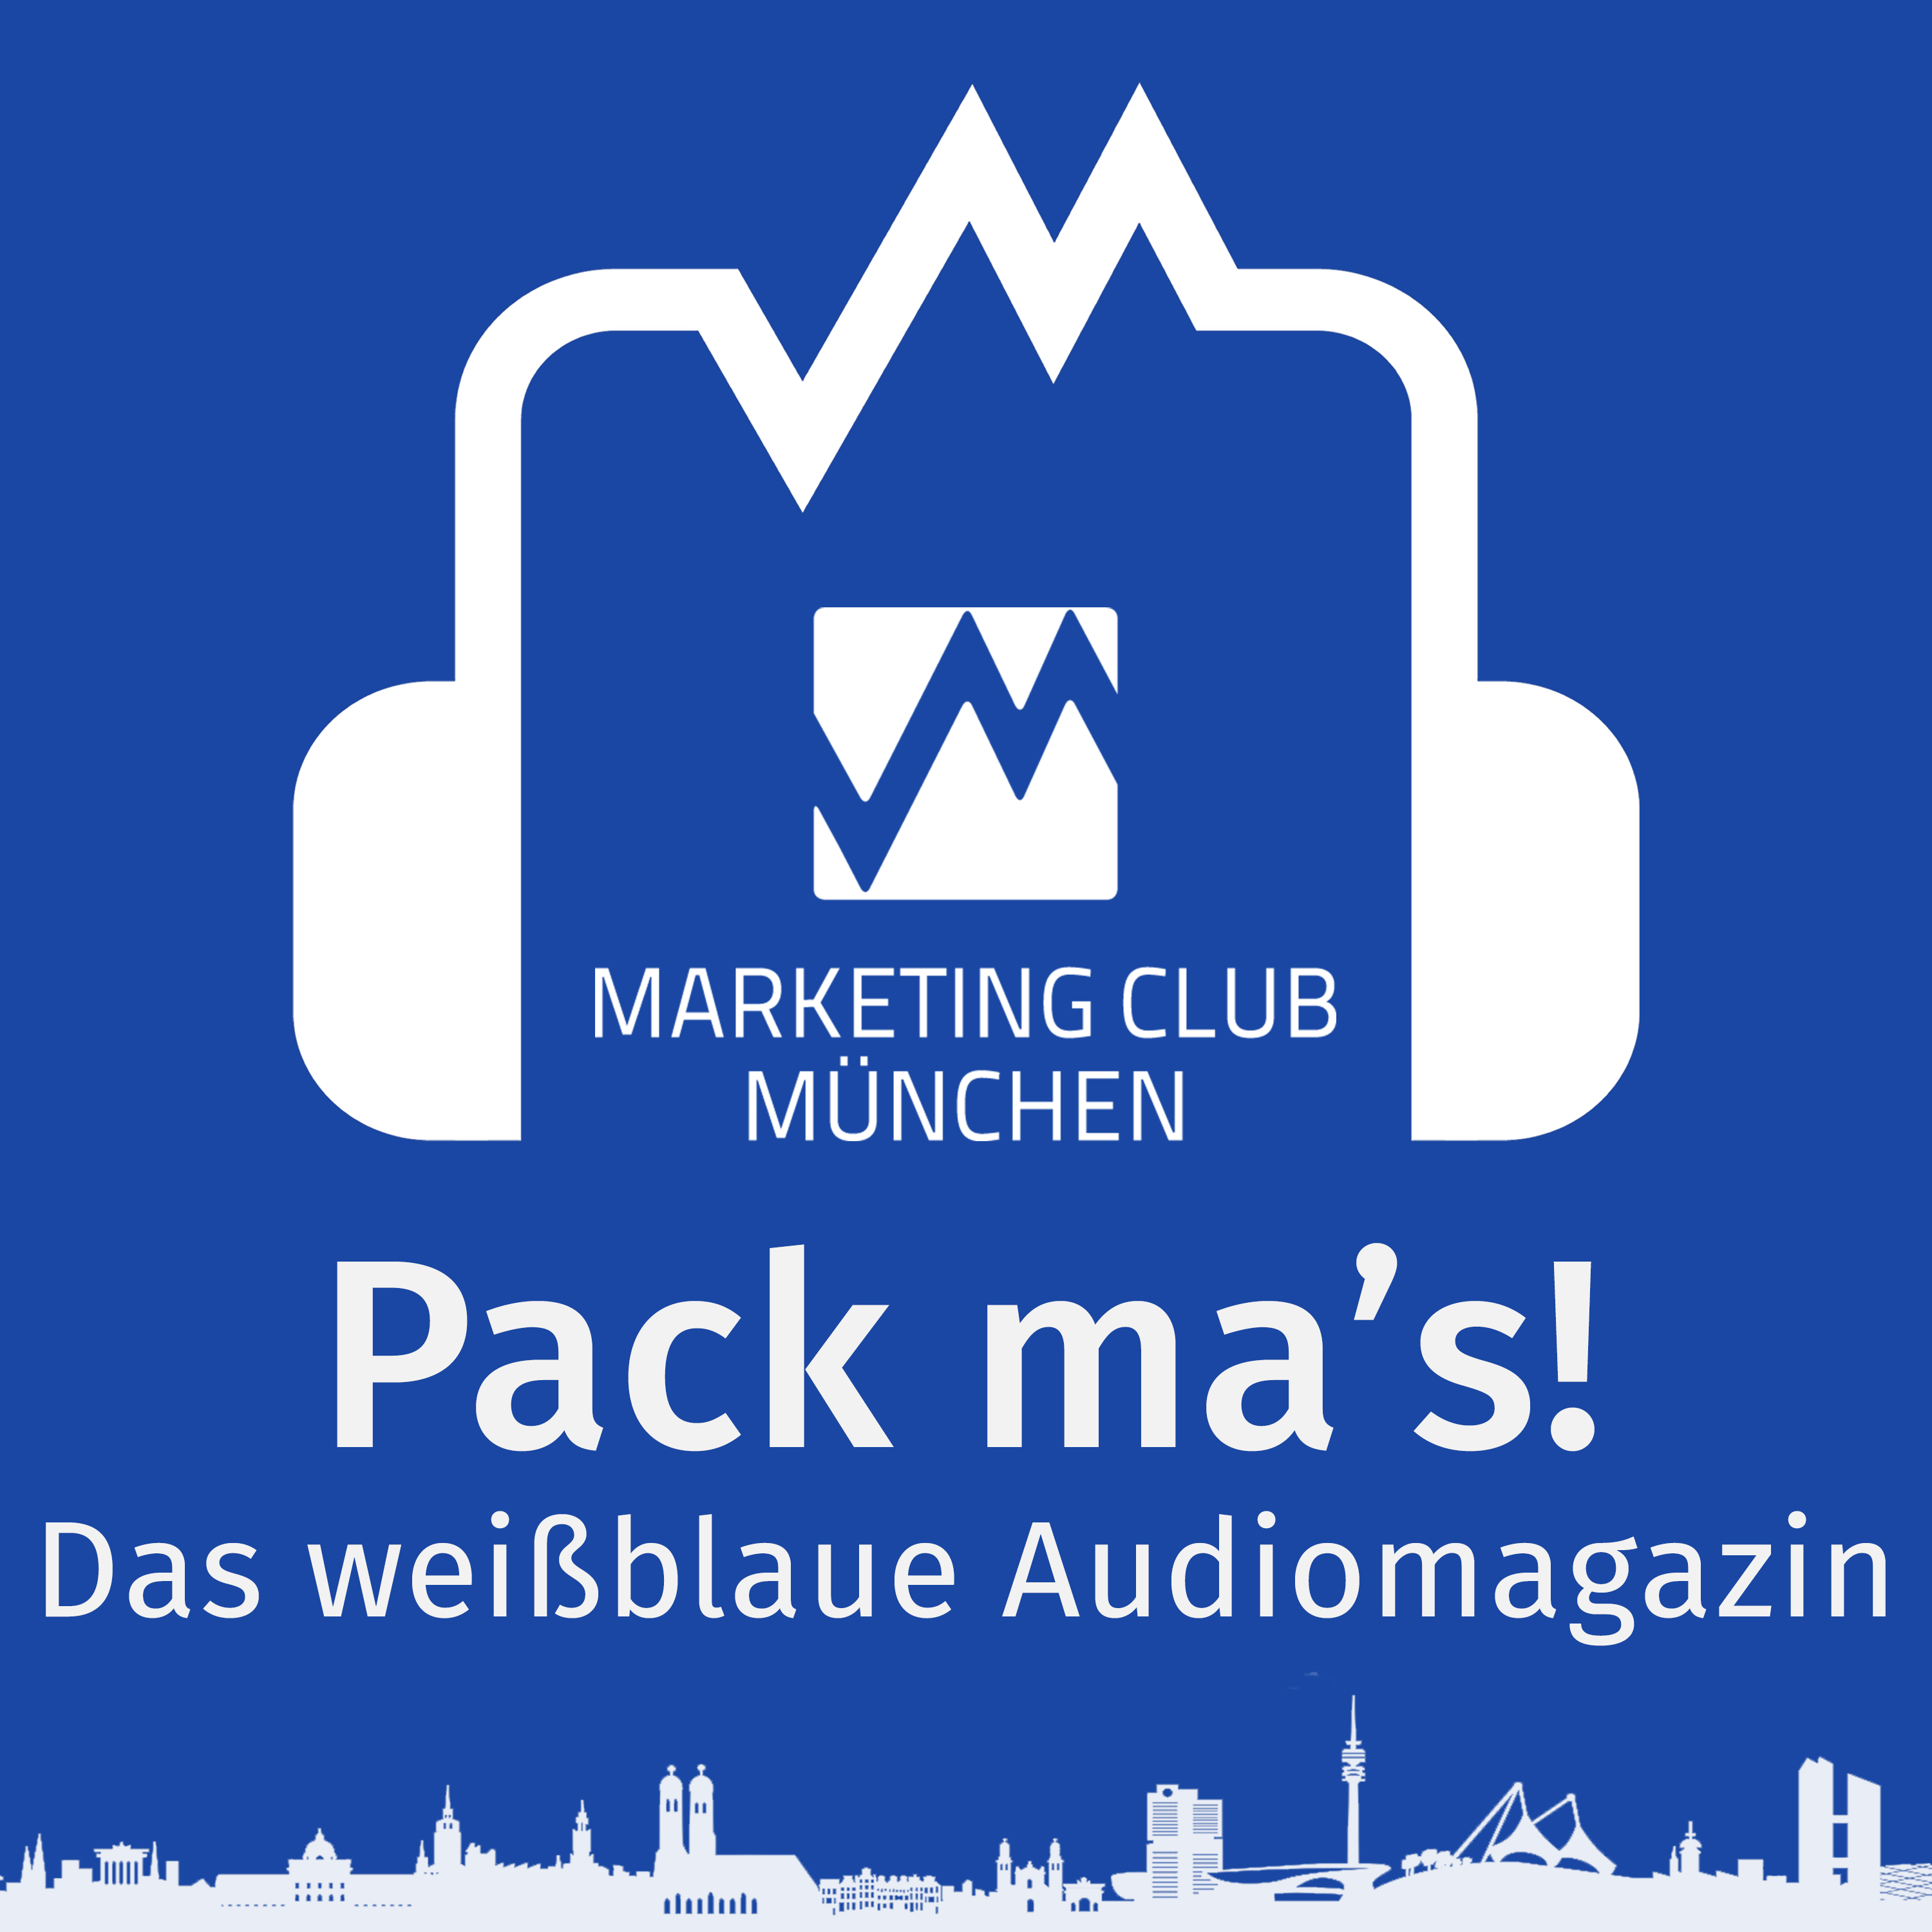 Pack ma's - Motivierende und inspirierende Geschichten aus dem Marketing Club München